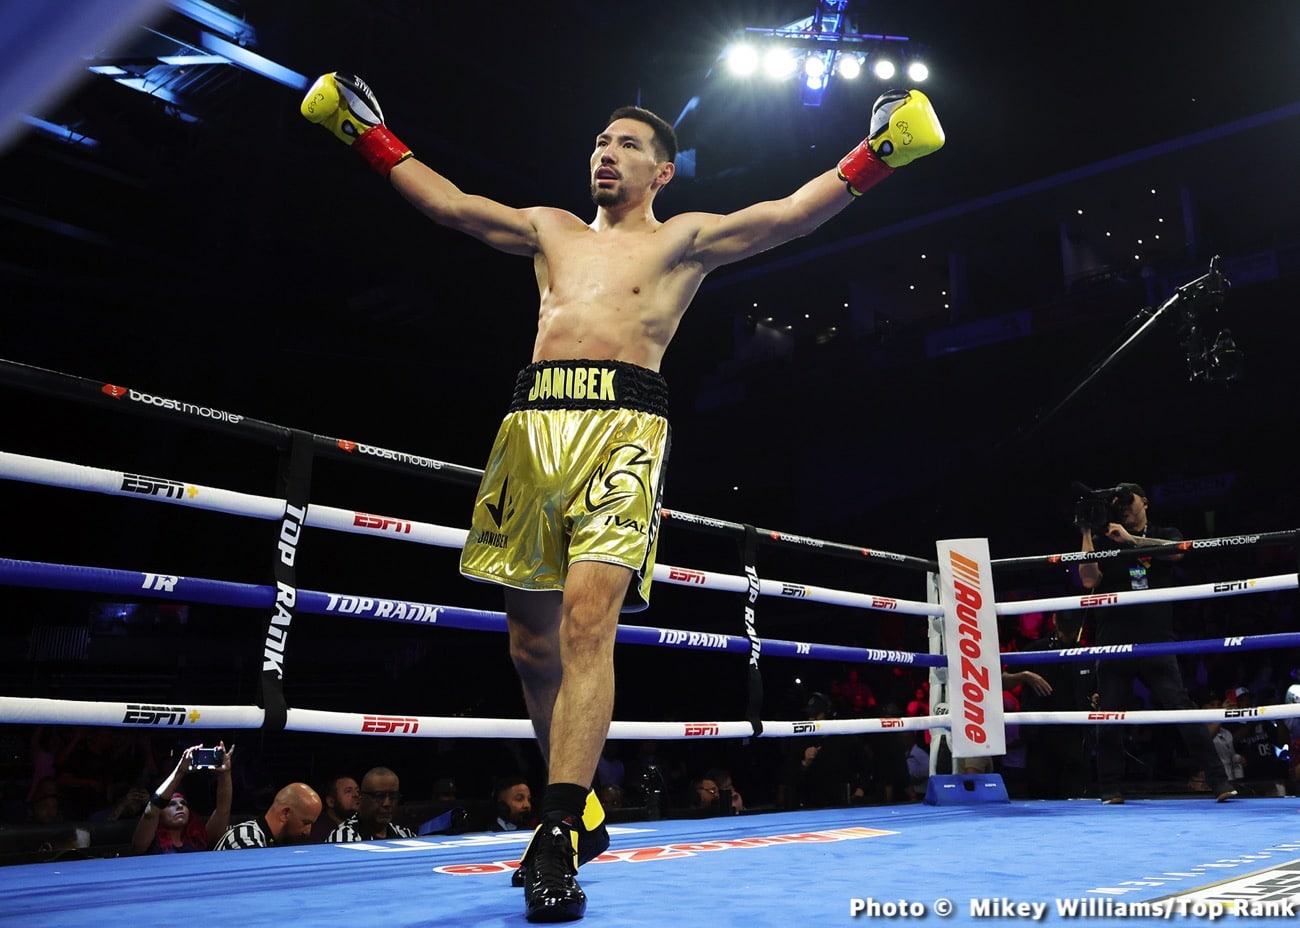 Janibek Alimkhanuly destroys Steven Butler - Boxing results